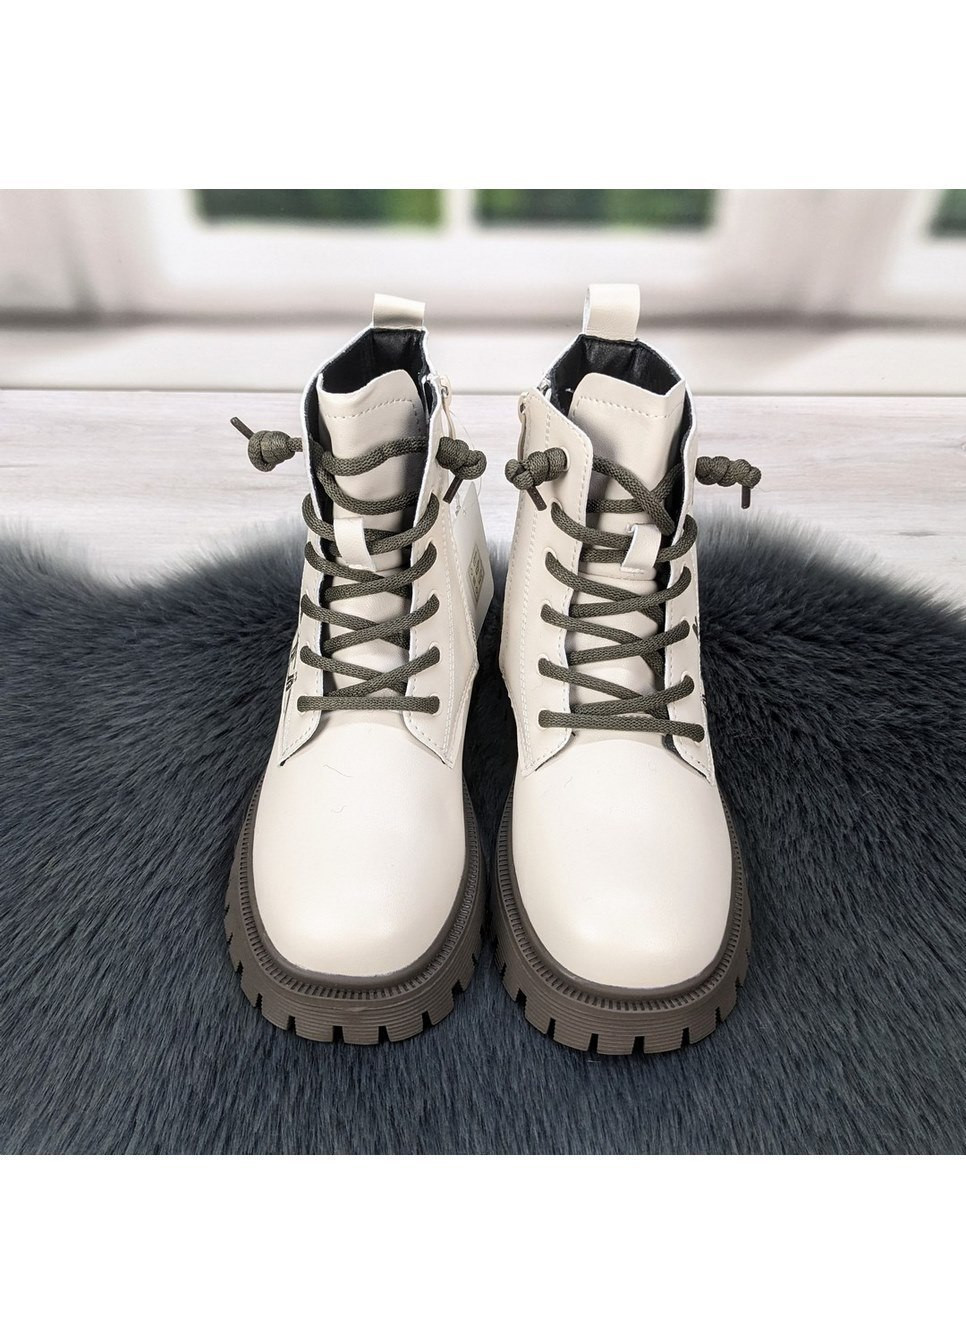 Молочные повседневные зимние ботинки подростковые для девочки зимние Jong Golf